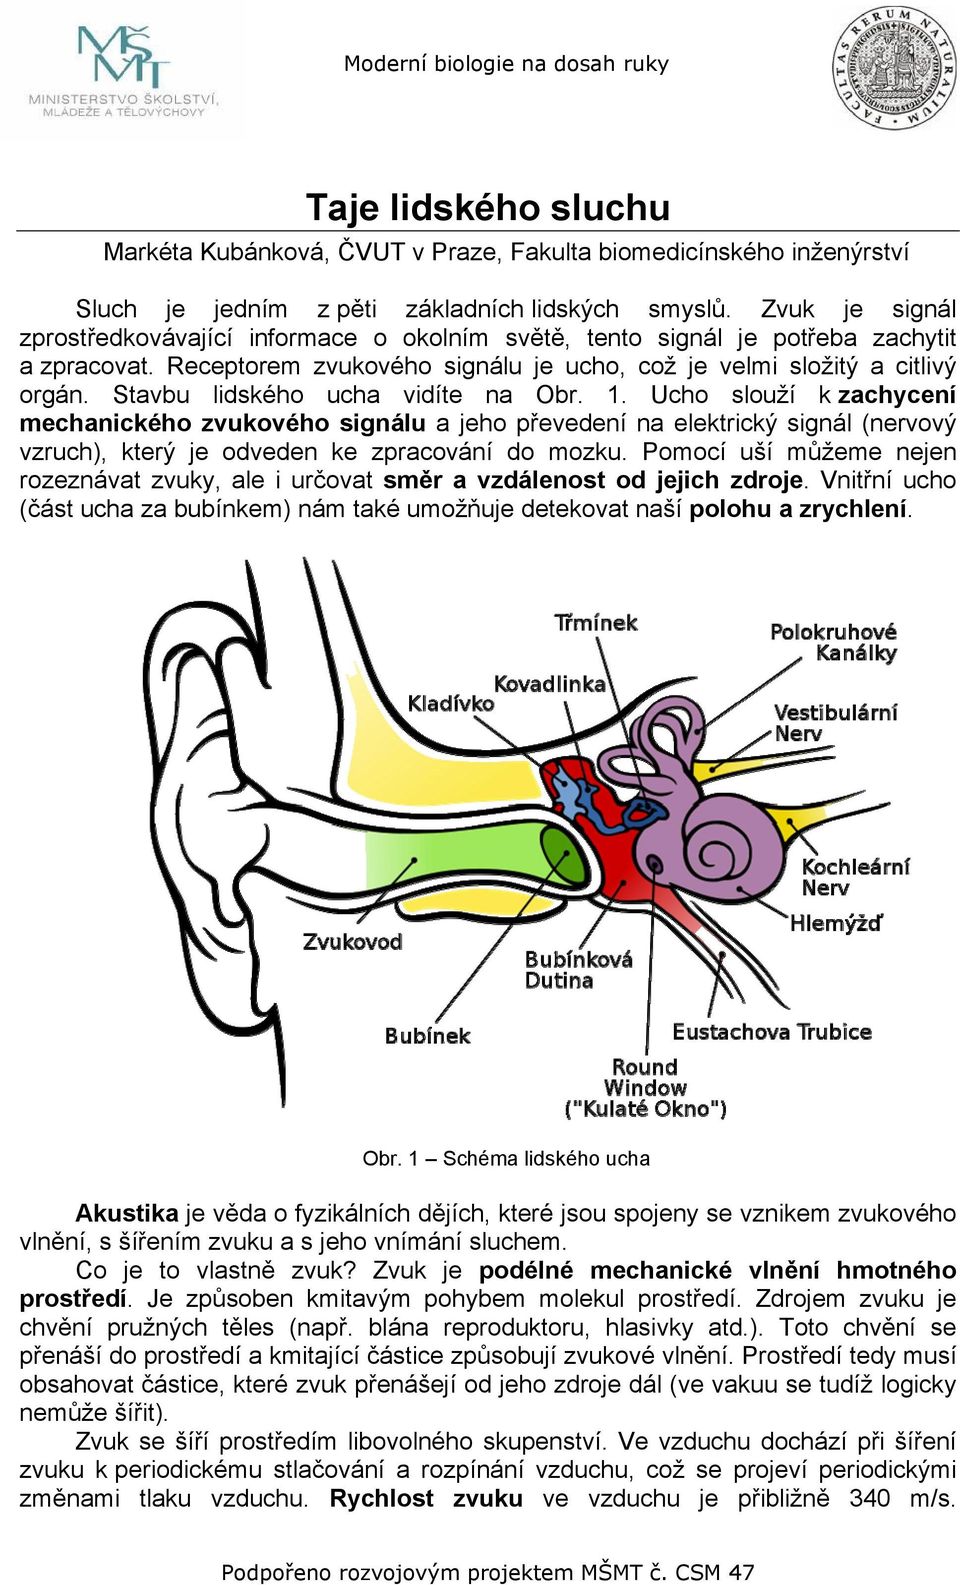 Stavbu lidského ucha vidíte na Obr. 1. Ucho slouží k zachycení mechanického zvukového signálu a jeho převedení na elektrický signál (nervový vzruch), který je odveden ke zpracování do mozku.